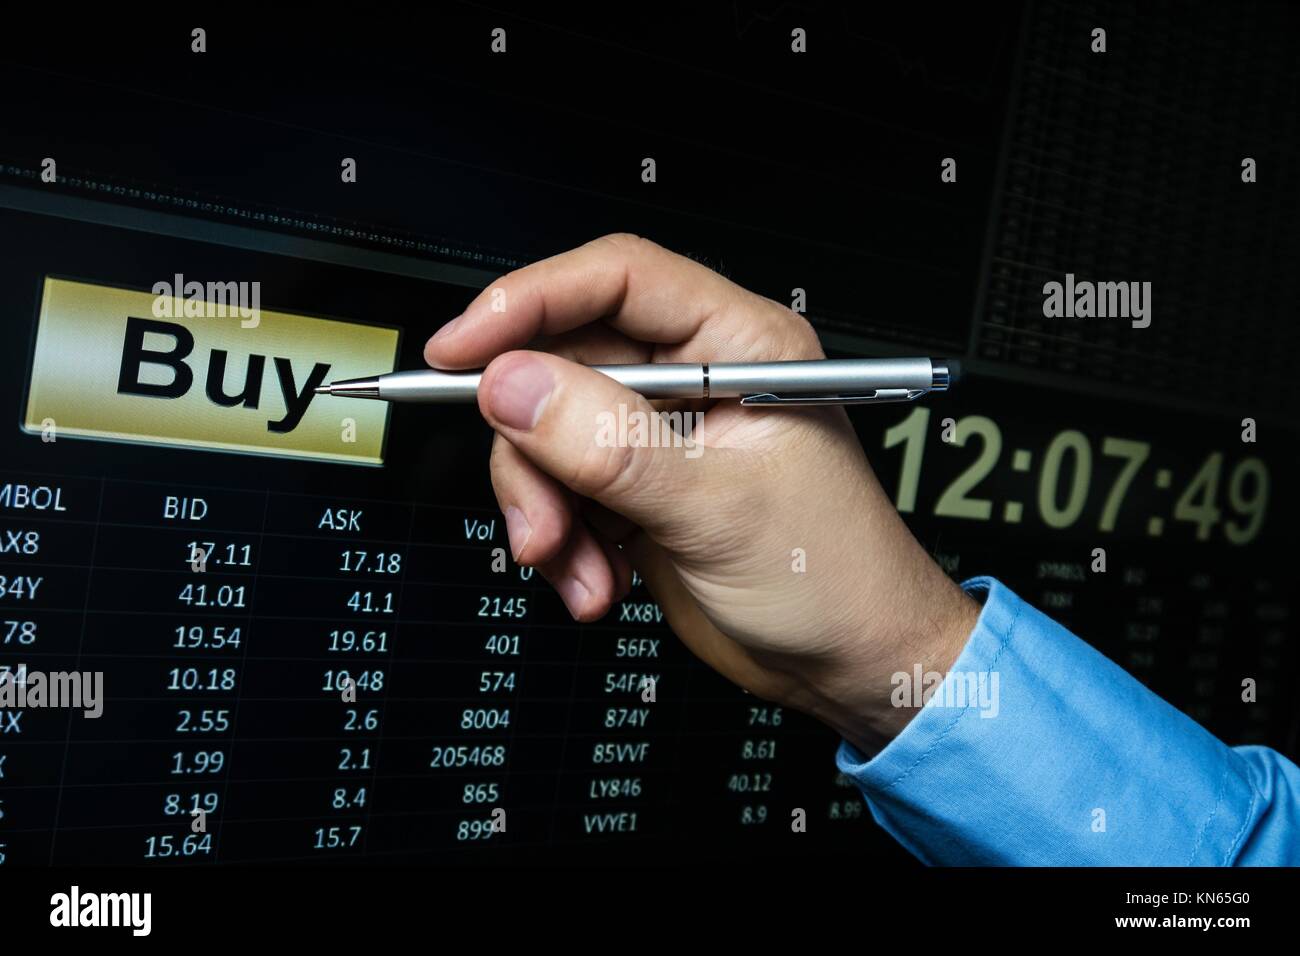 Botón de compra y software de trading, apuntando con el lápiz en el botón. Foto de stock